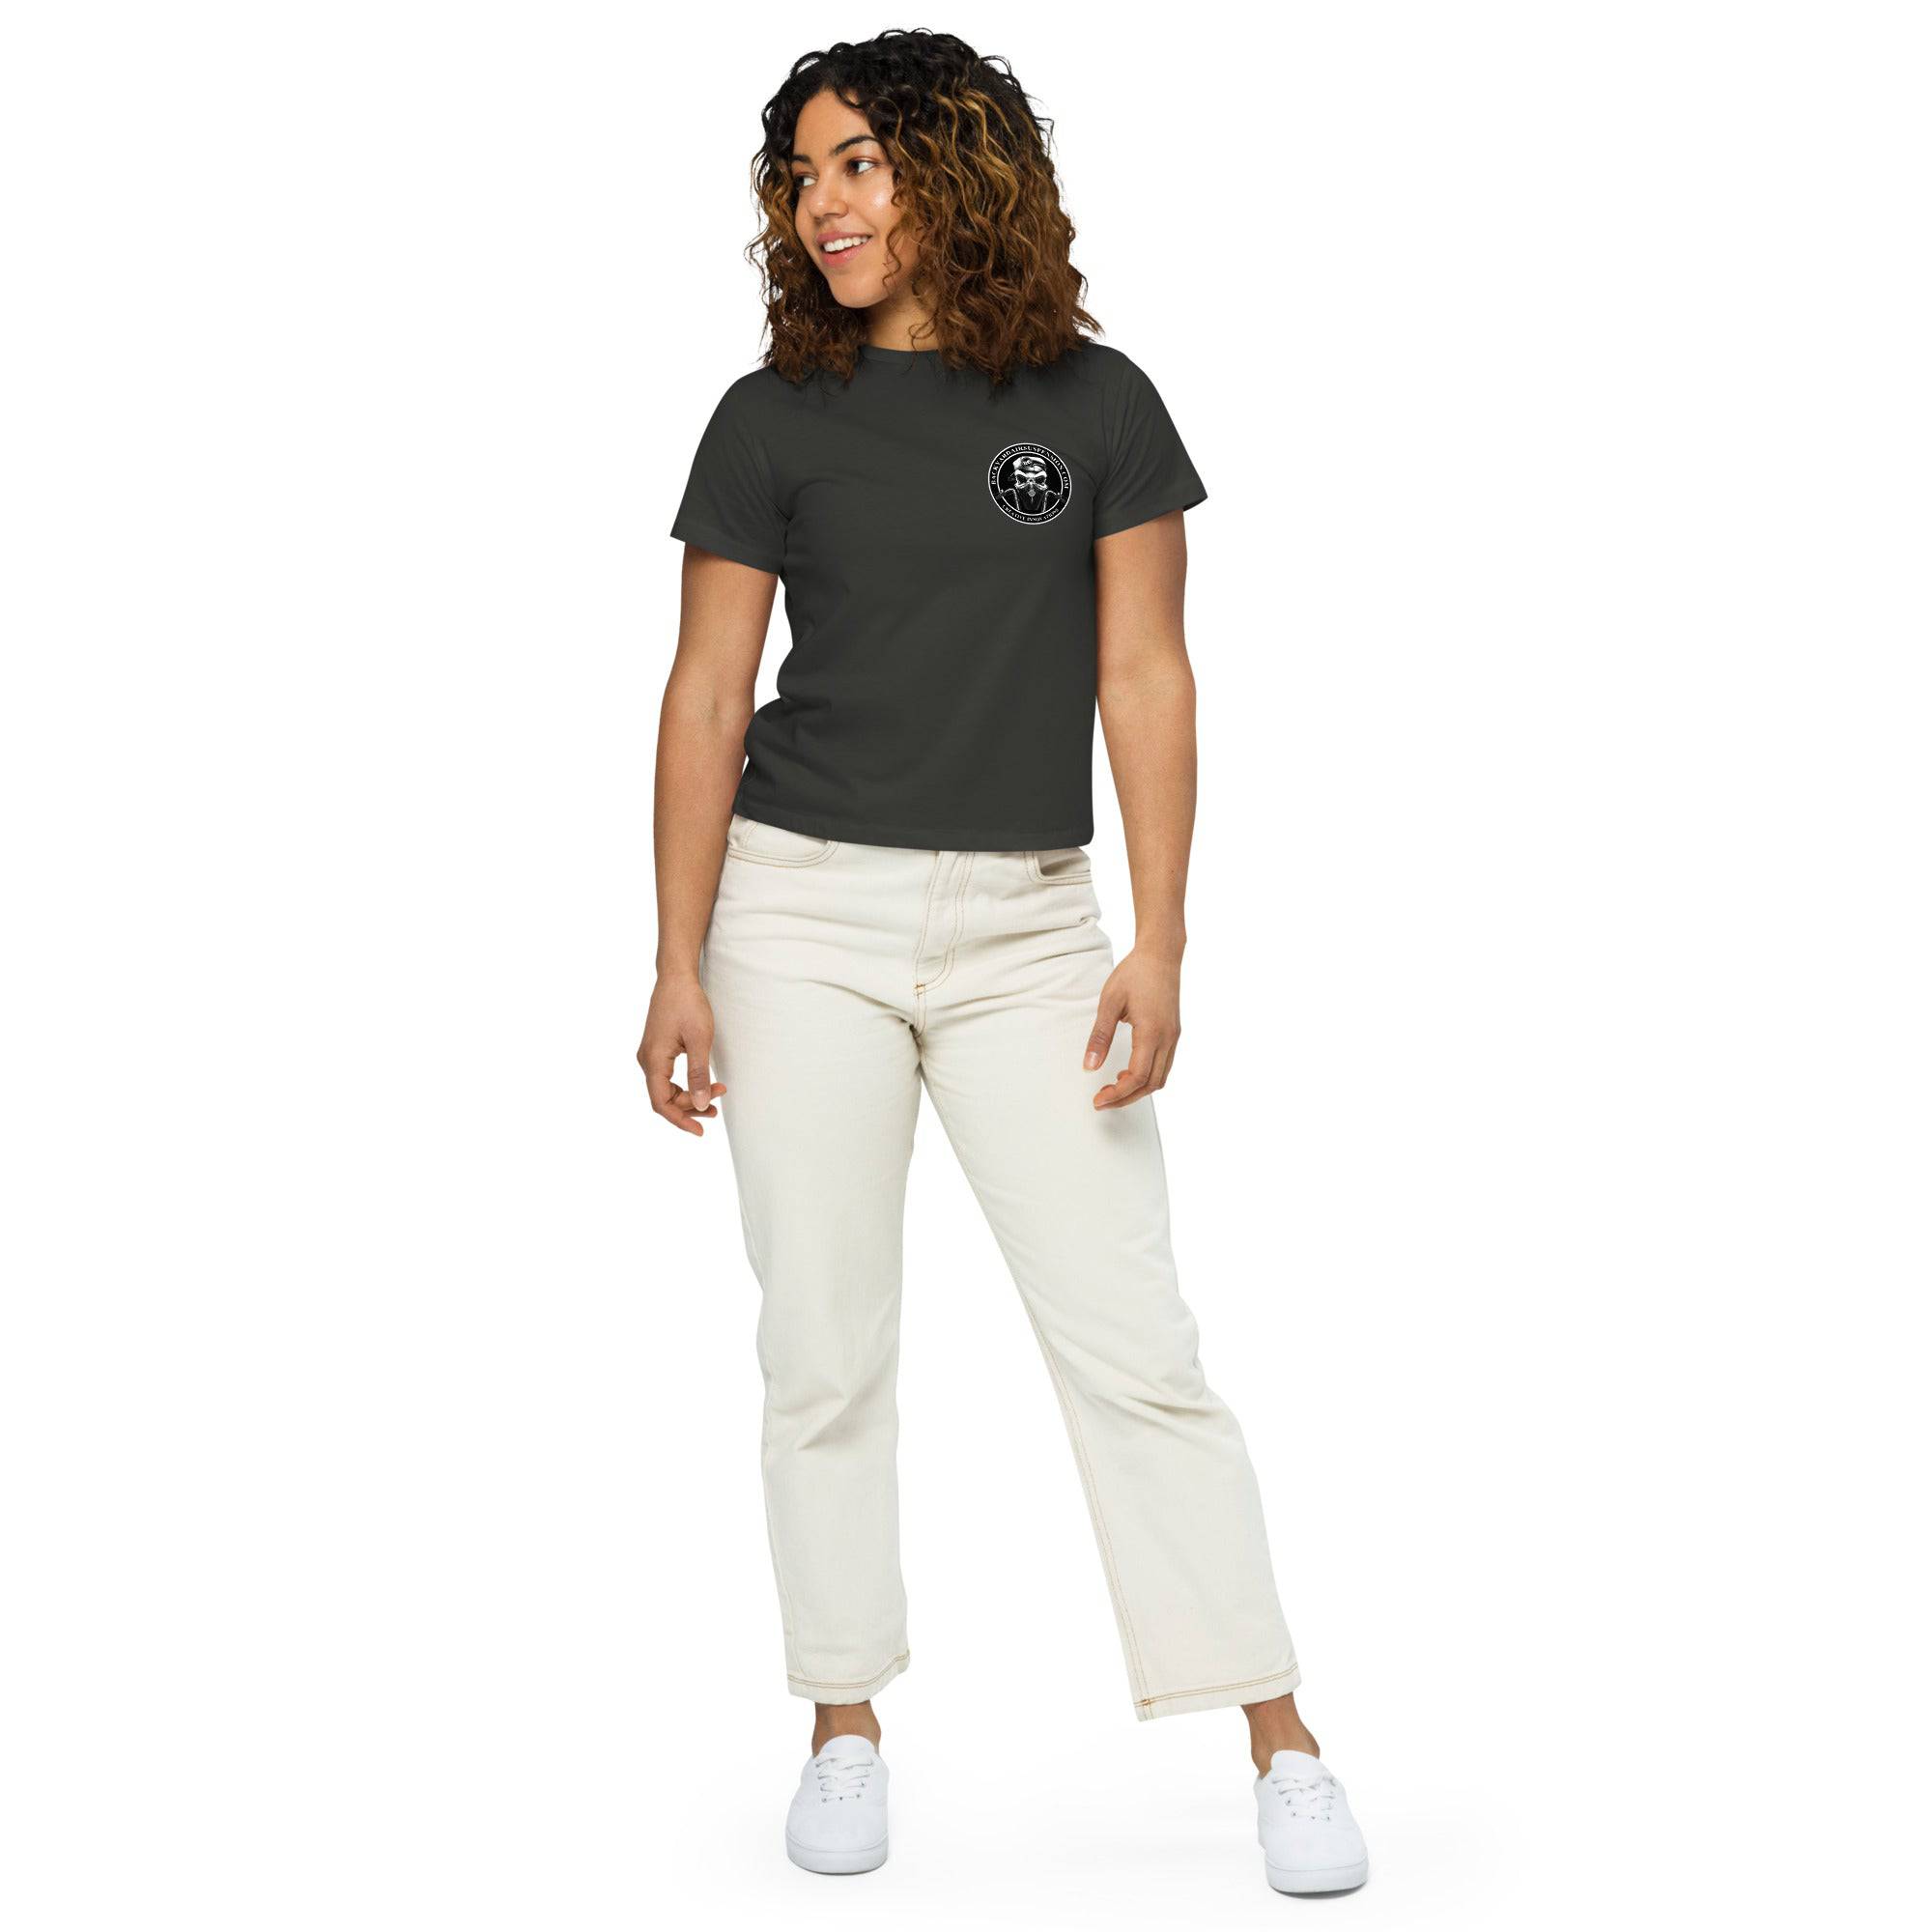 BAS Women’s high-waisted t-shirt - Backyard Air Suspension & Innovations, LLC.